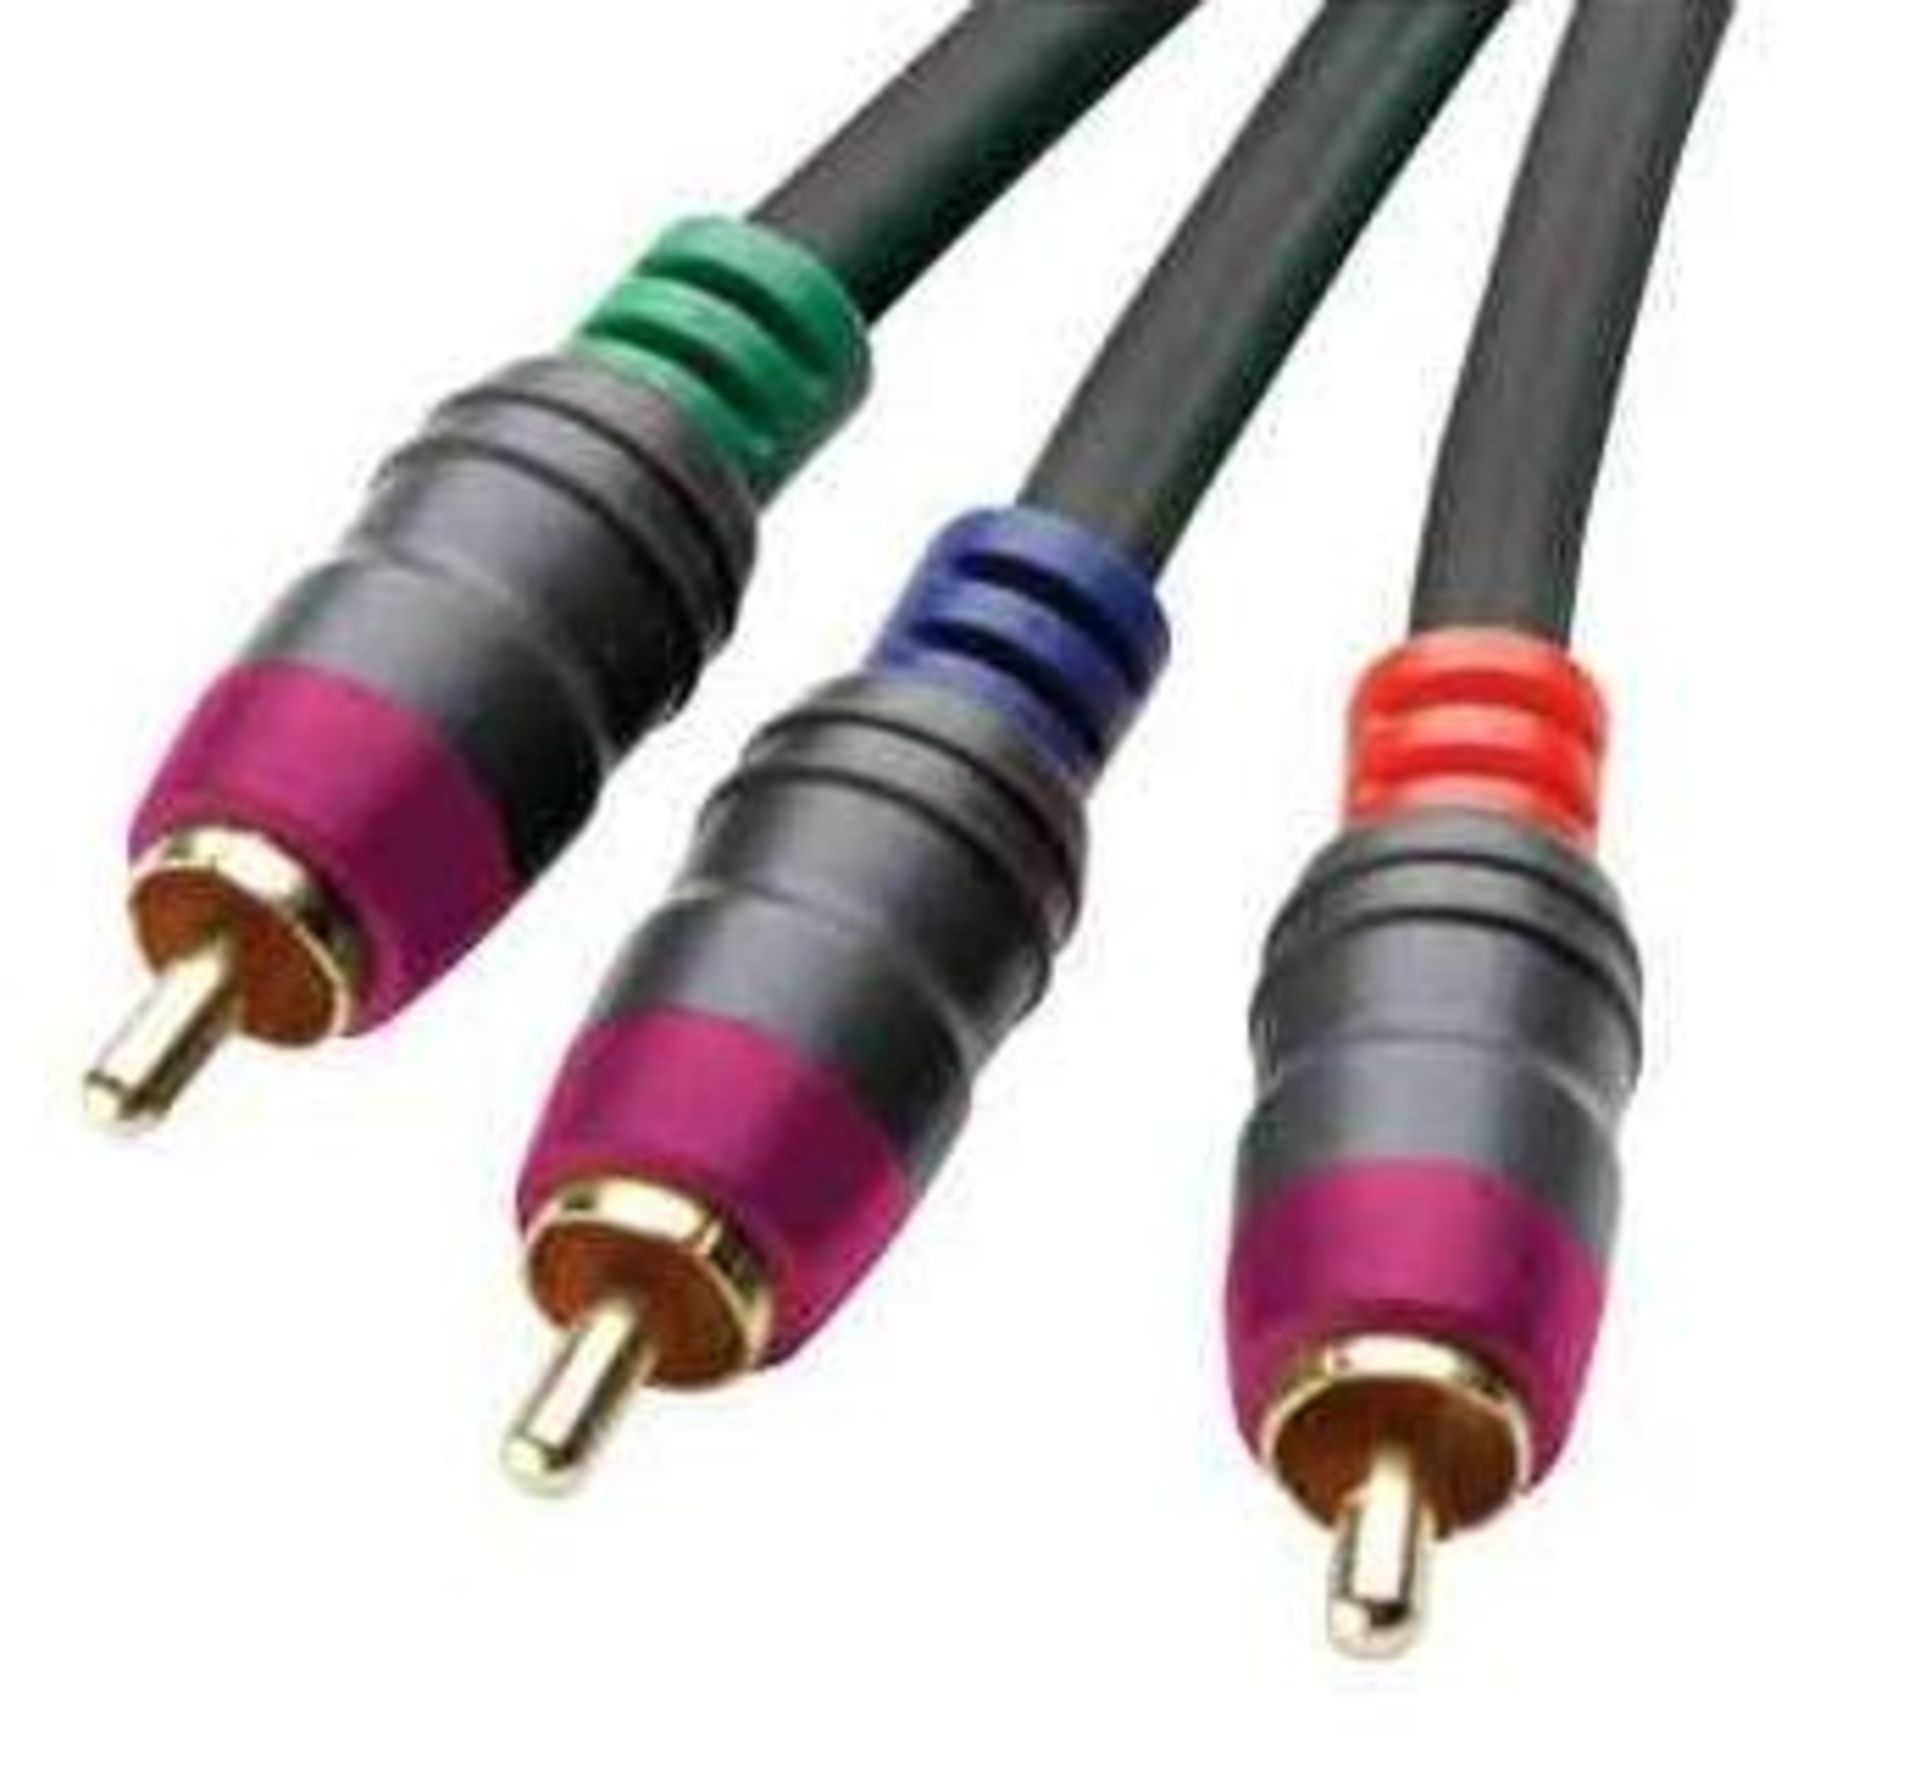 5 Alphason component video cables (3m)